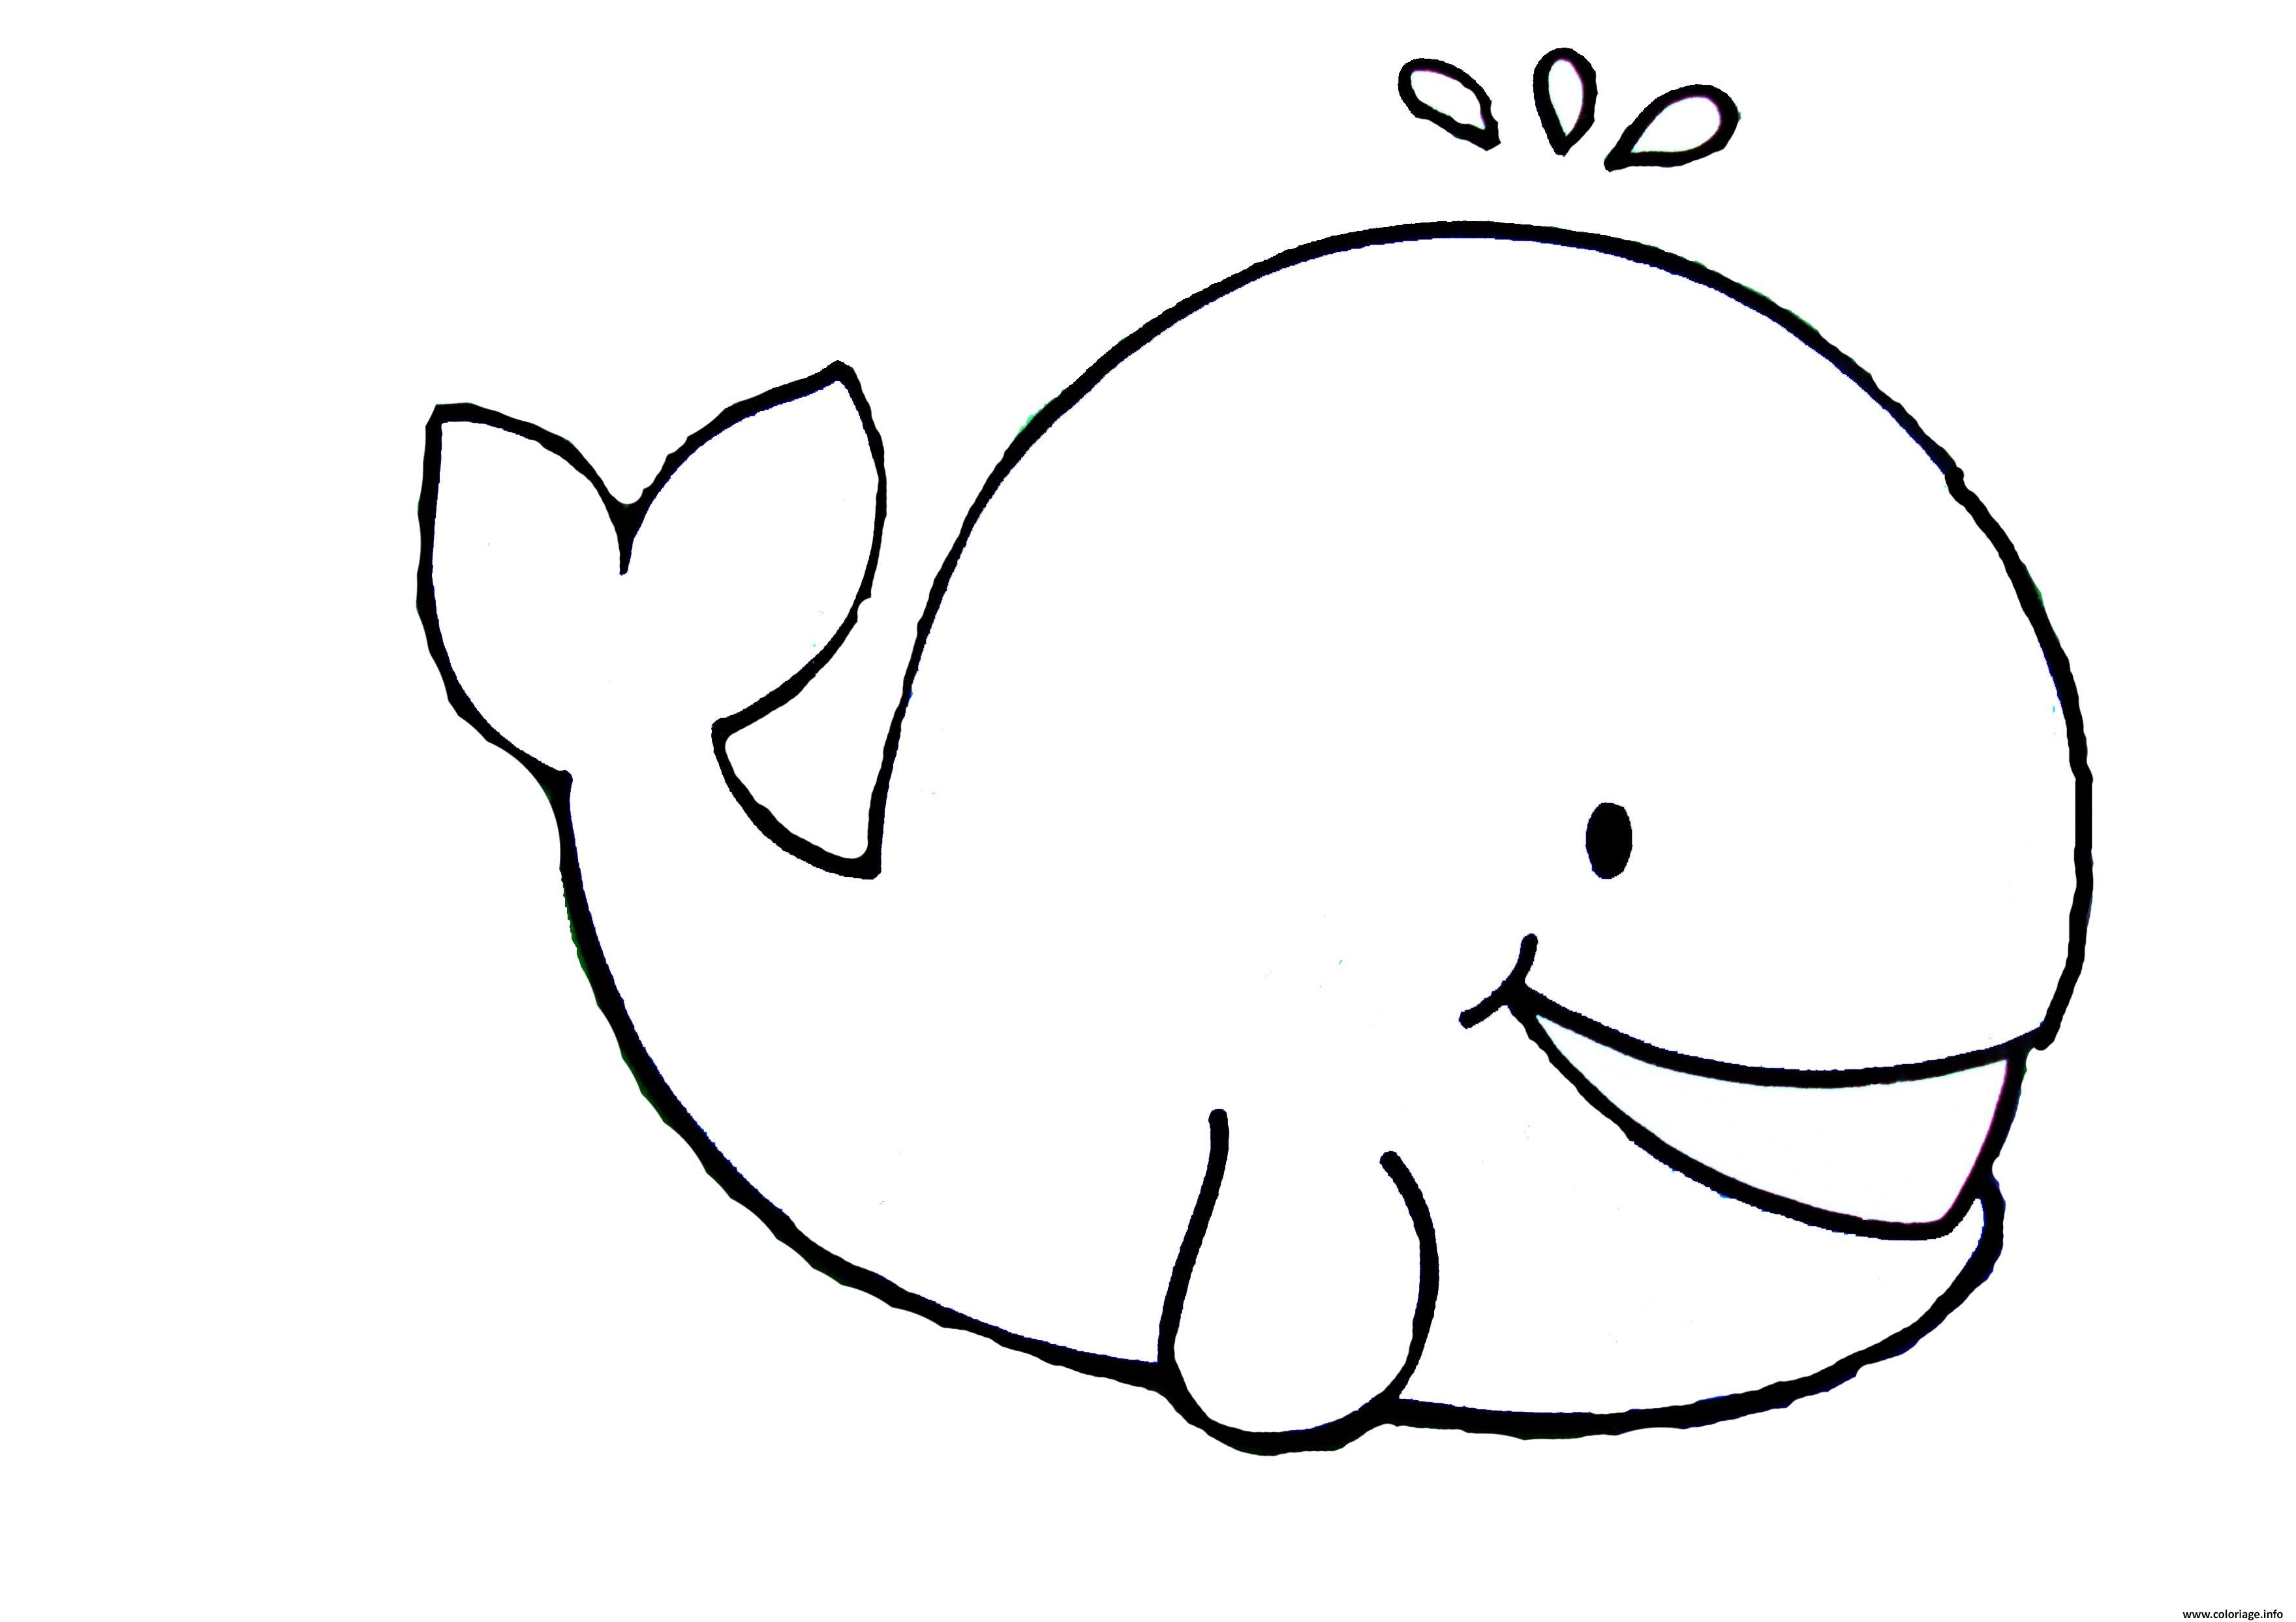 Dessin baleine facile enfant maternelle Coloriage Gratuit à Imprimer